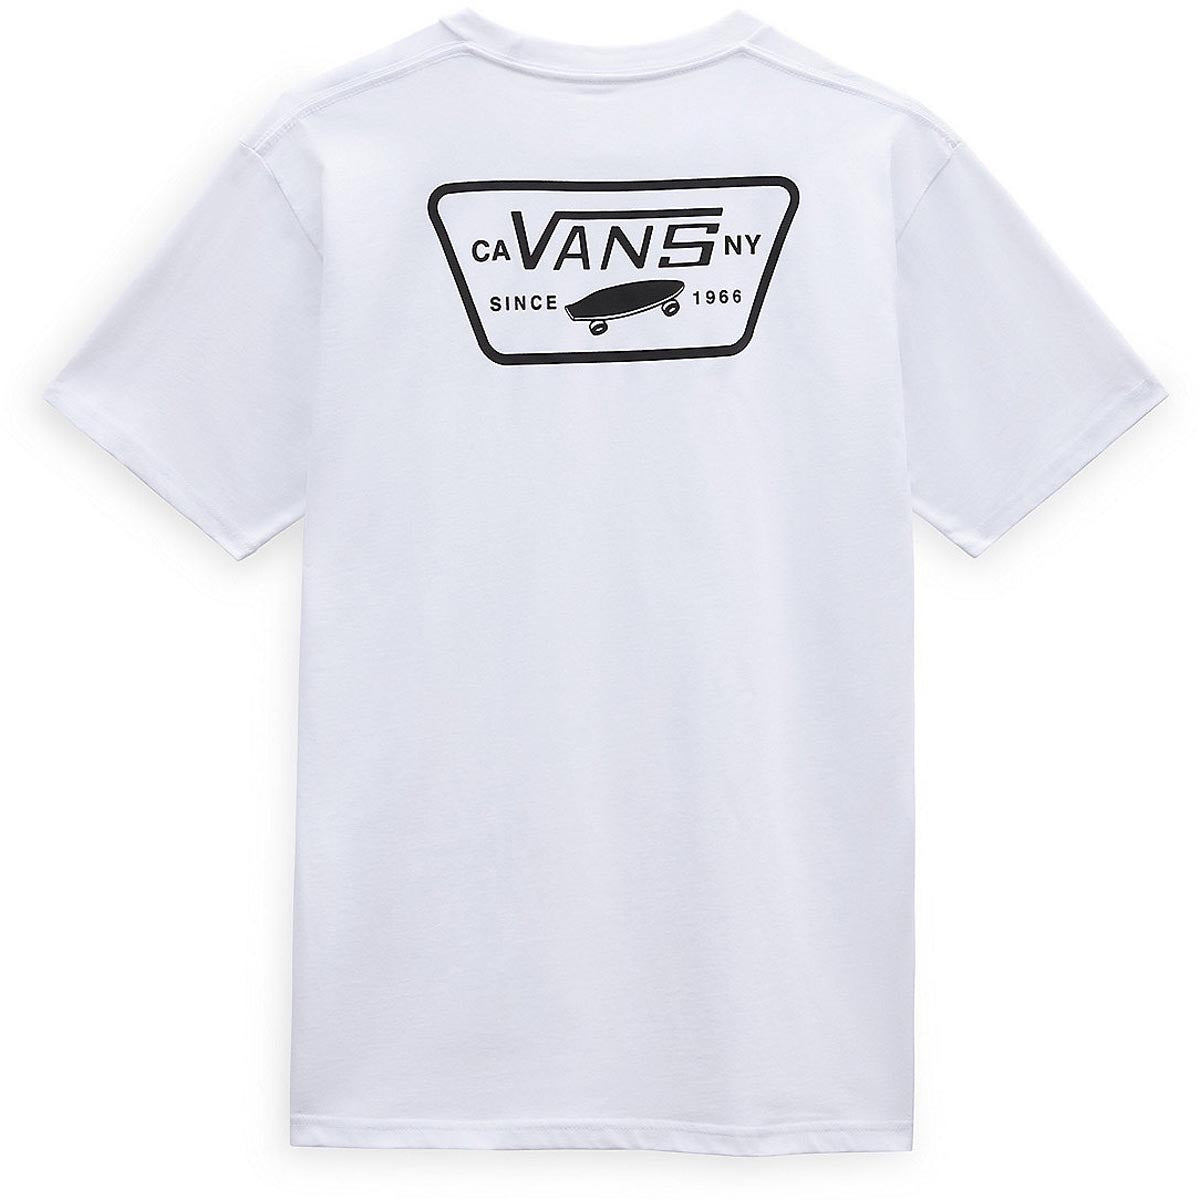 Vans Full Back Patch T-Shirt - White/Black image 2